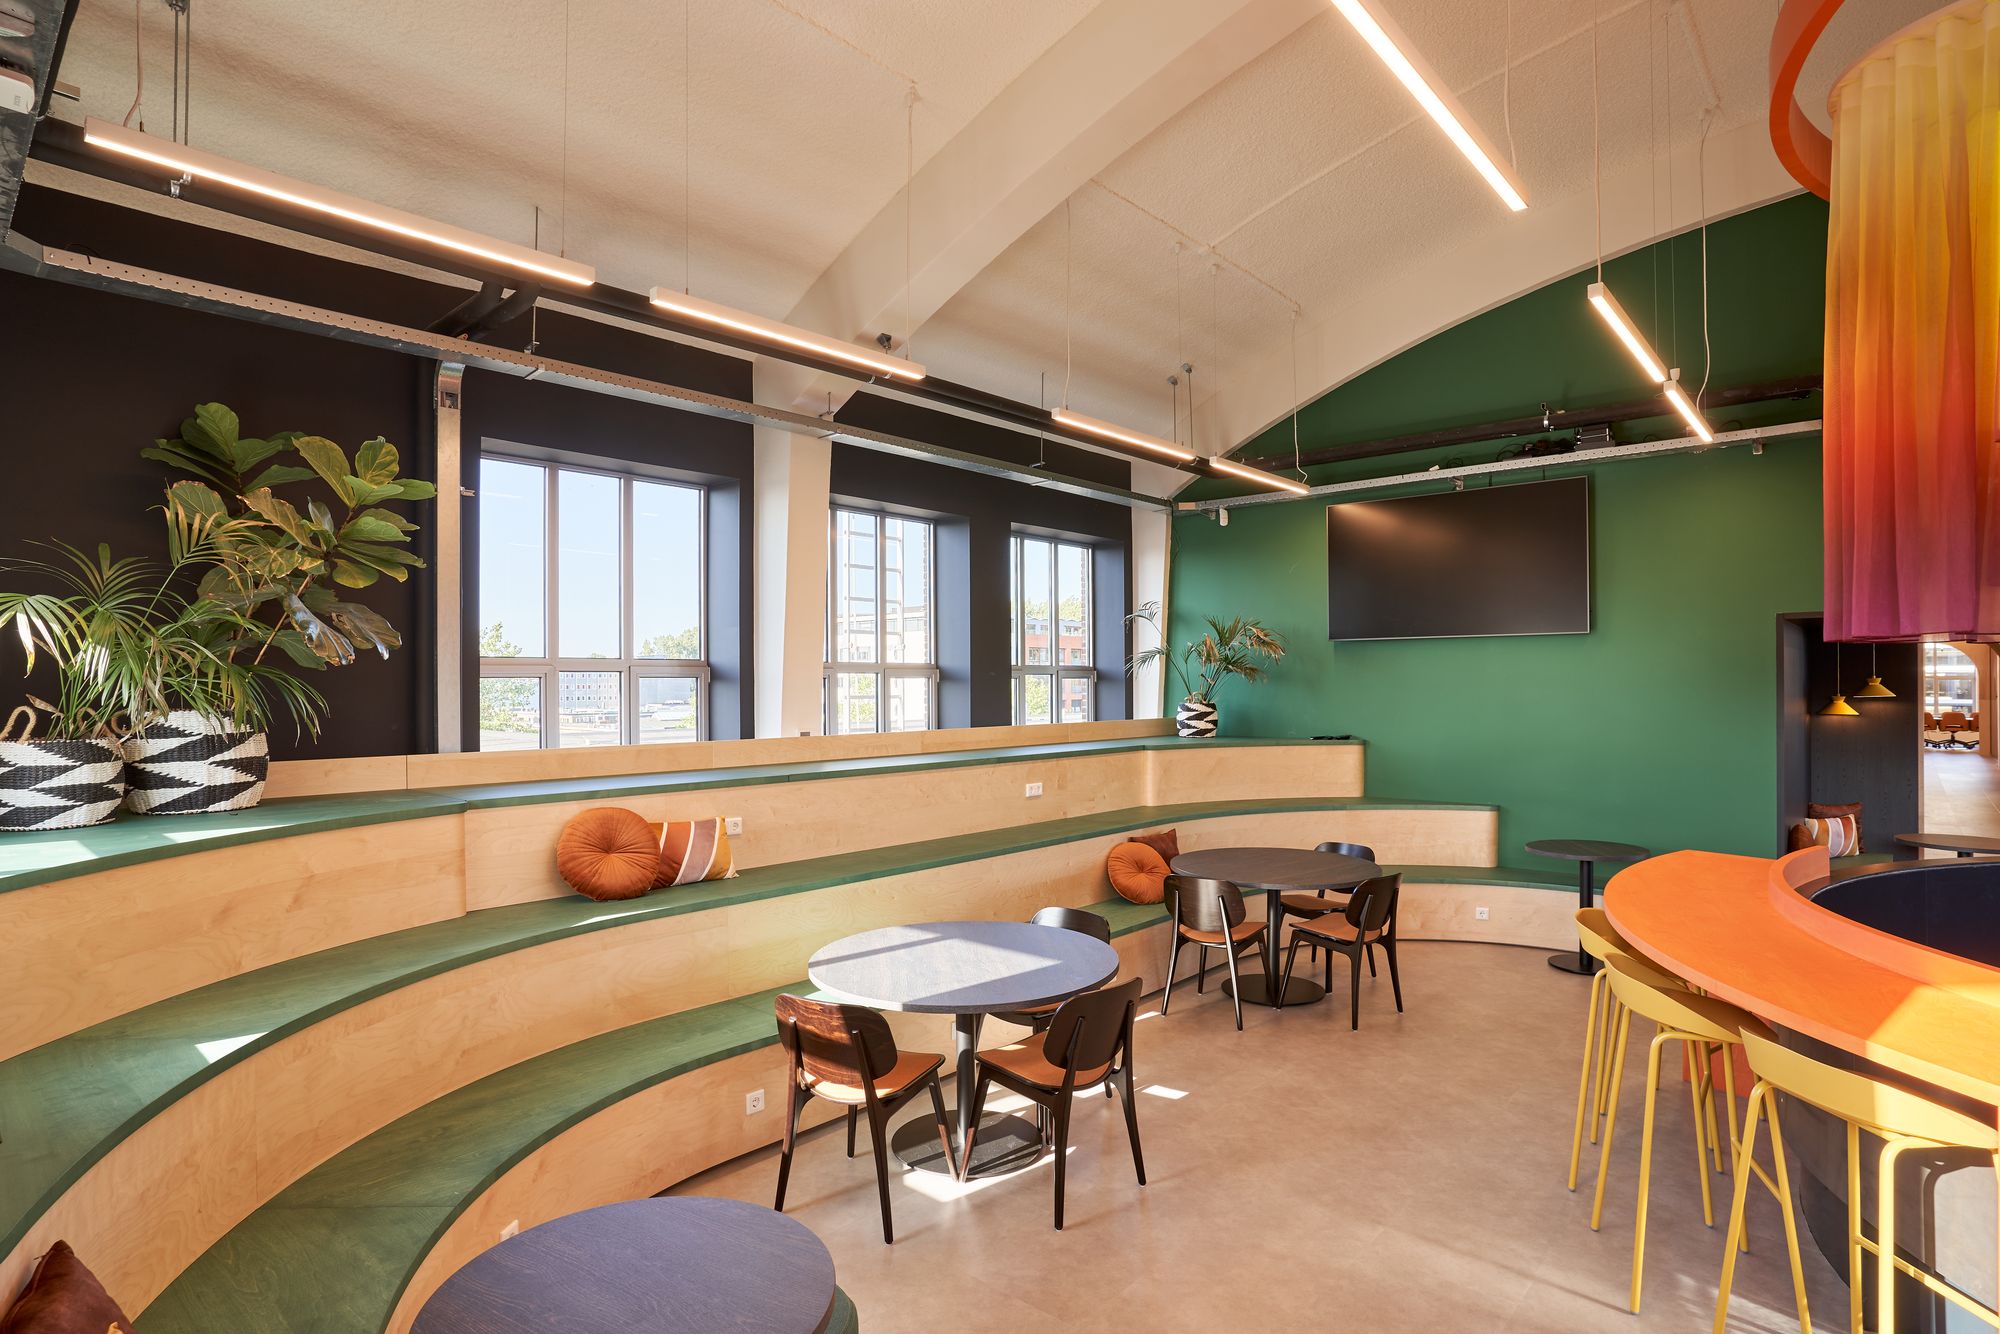 图片[7]|Sunrock办公室-阿姆斯特丹|ART-Arrakis | 建筑室内设计的创新与灵感